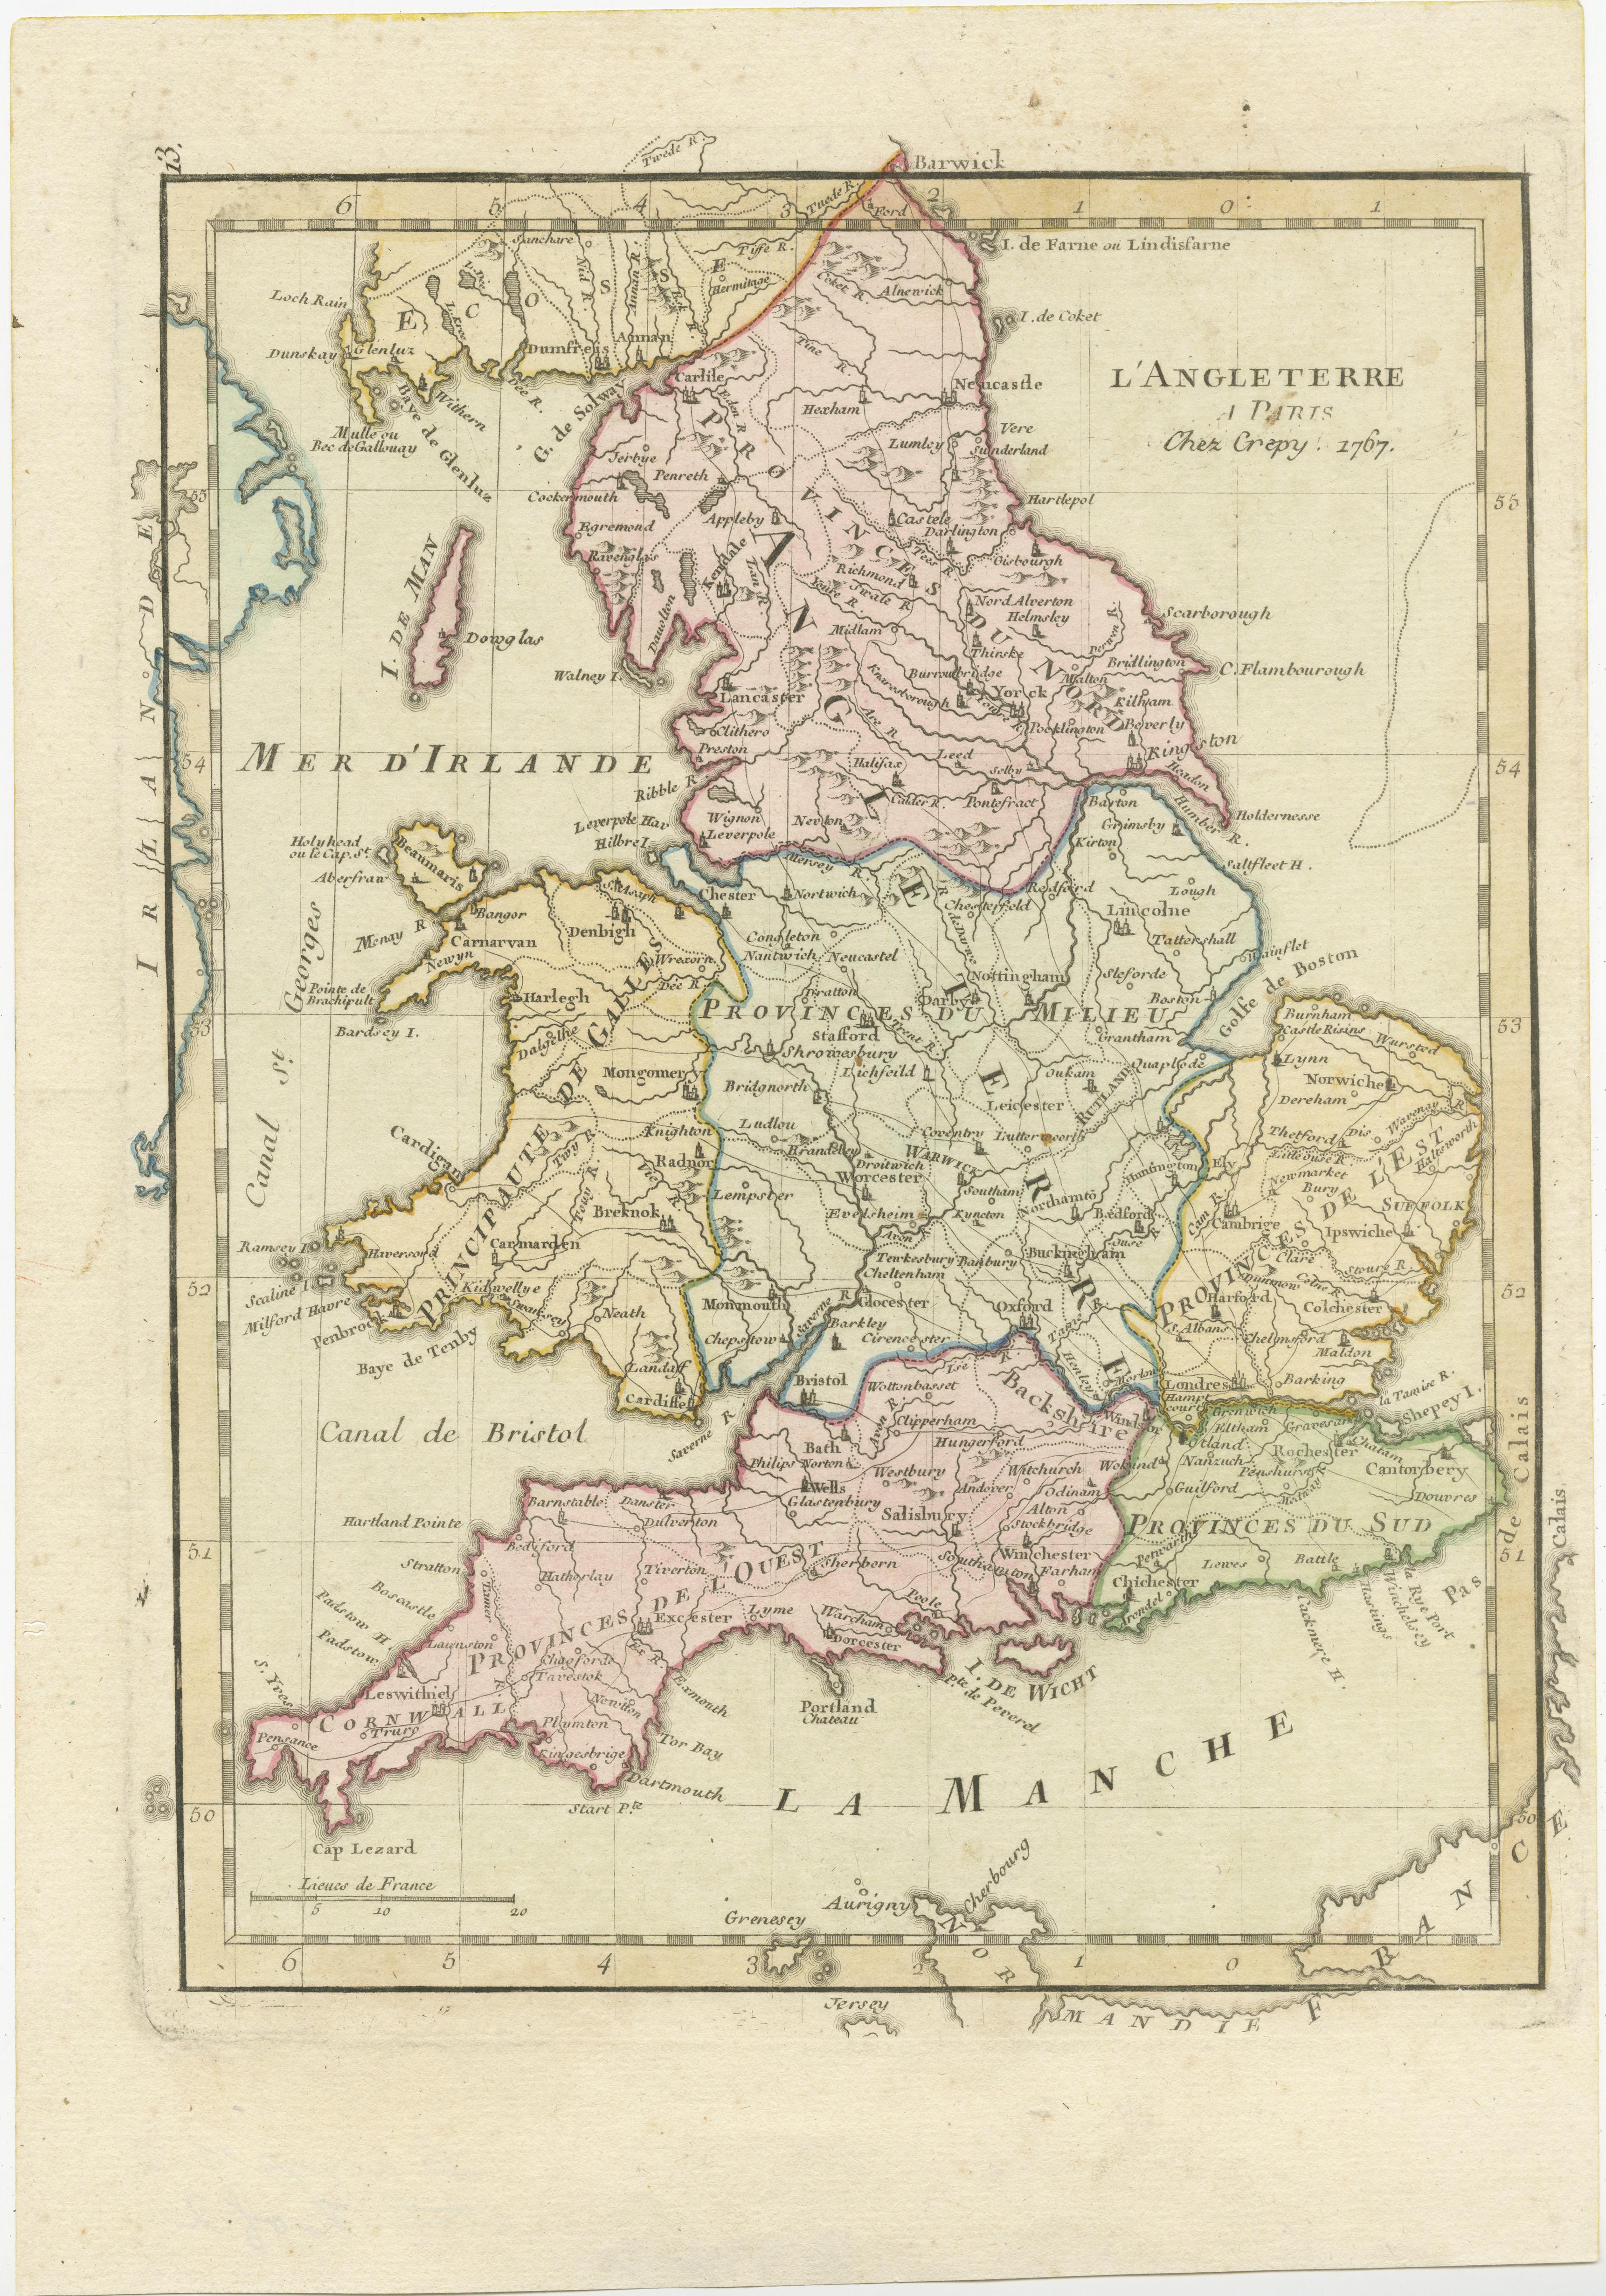 Antike Karte mit dem Titel 'l'Angleterre'. Original antike Karte von England, mit originaler/zeitgenössischer Handkolorierung. Herausgegeben von Crepy, ca. 1767/ 